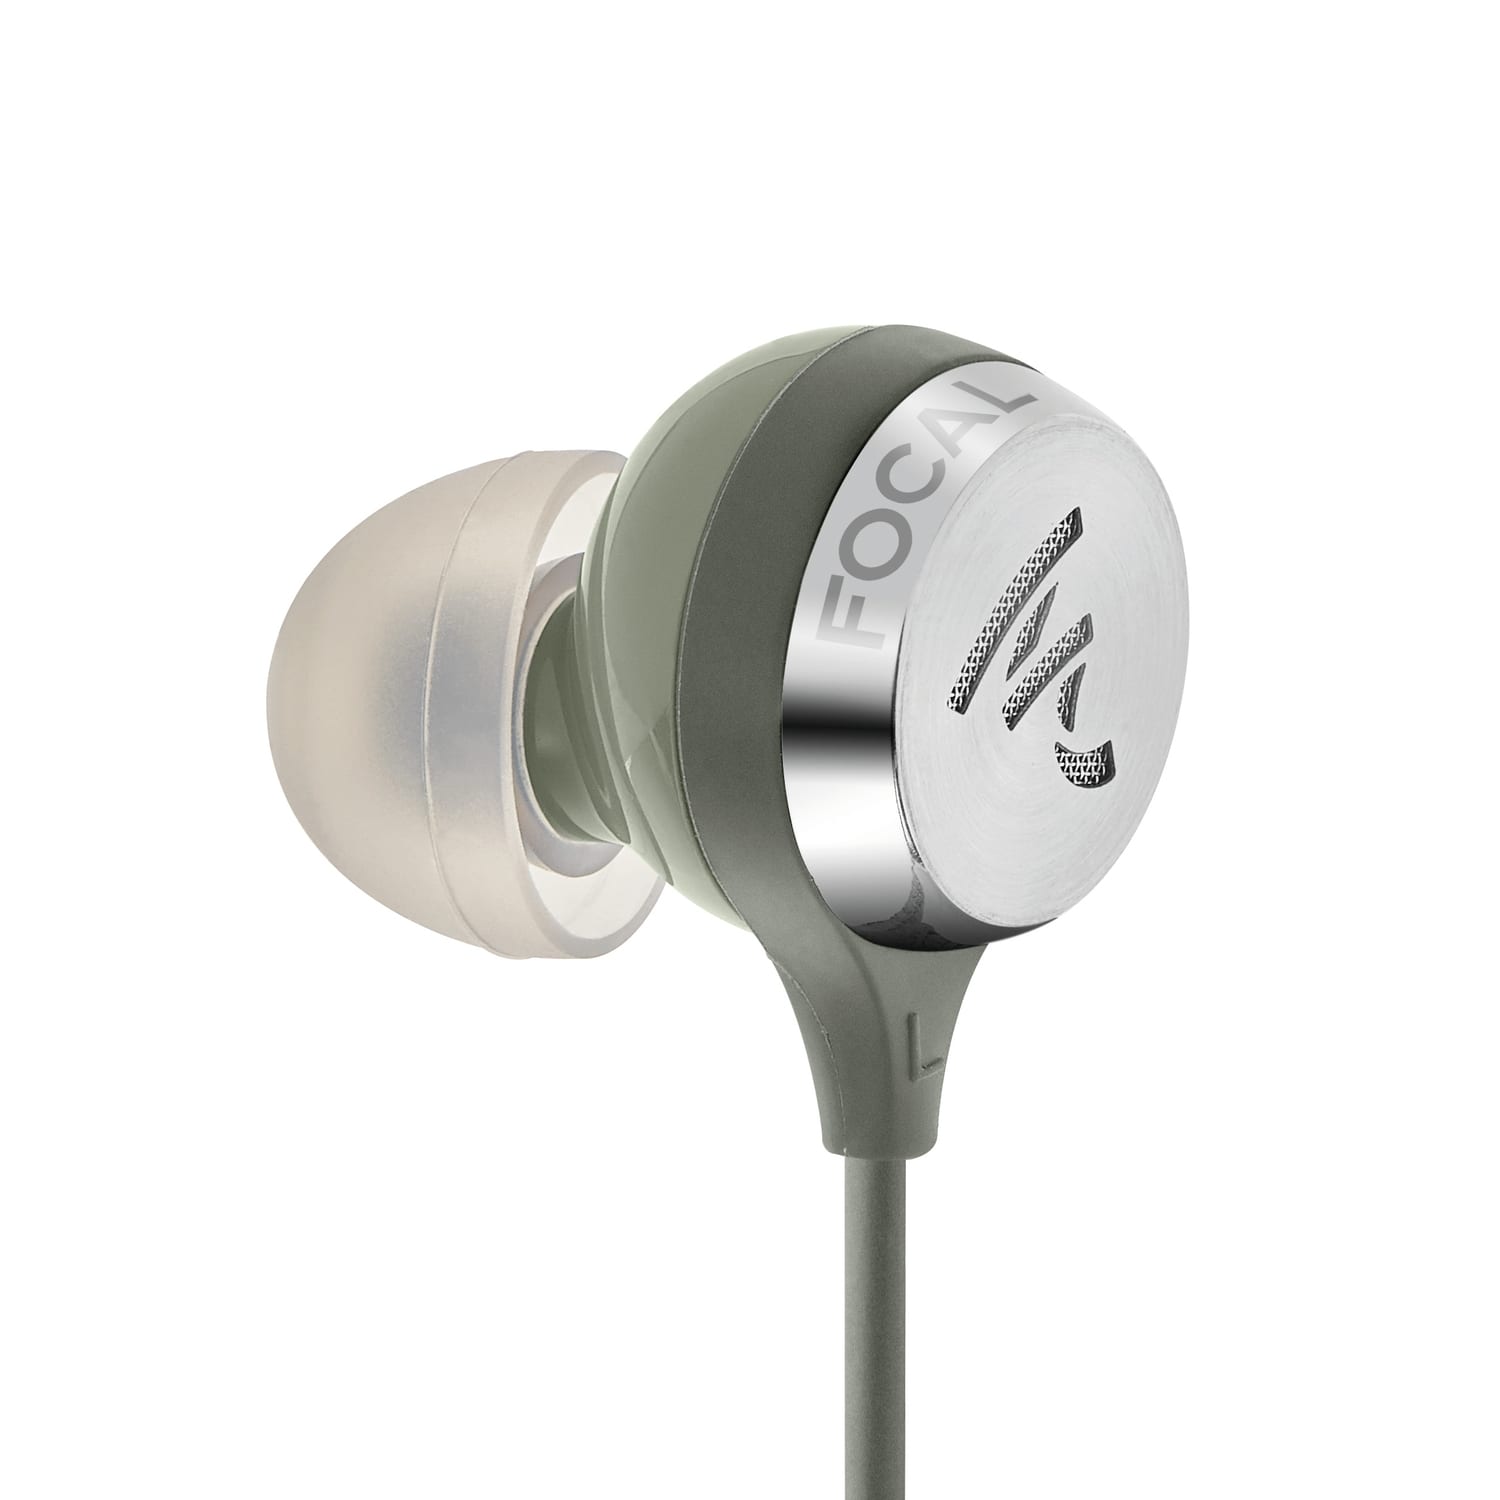 Focal Sphear Wireless groen - In ear oordopjes